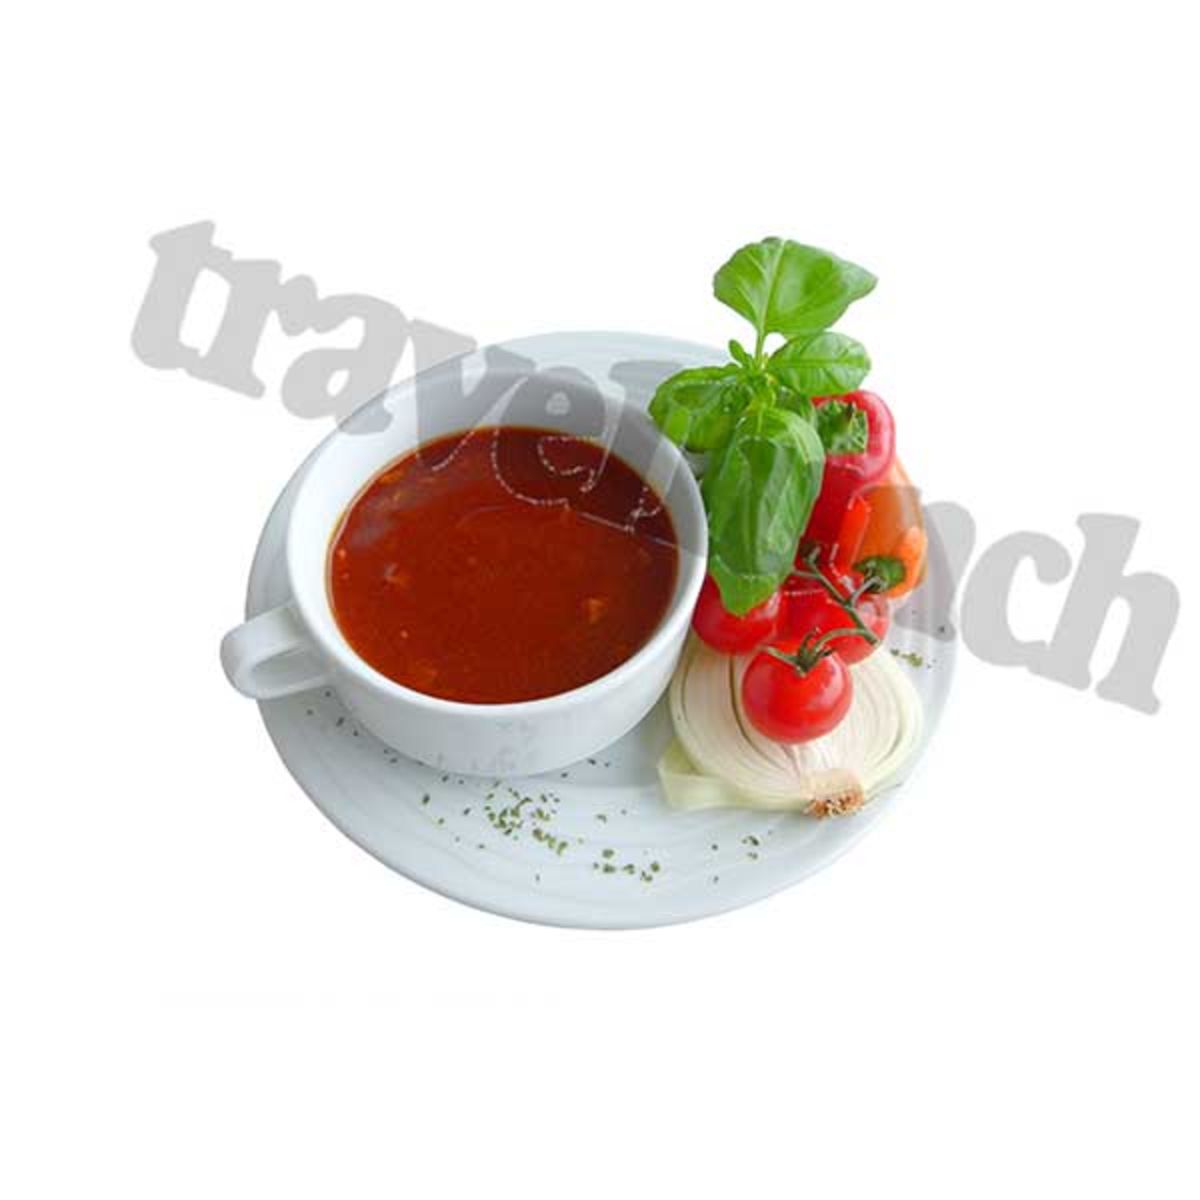 Sopa guulash de ternera - Doble porción